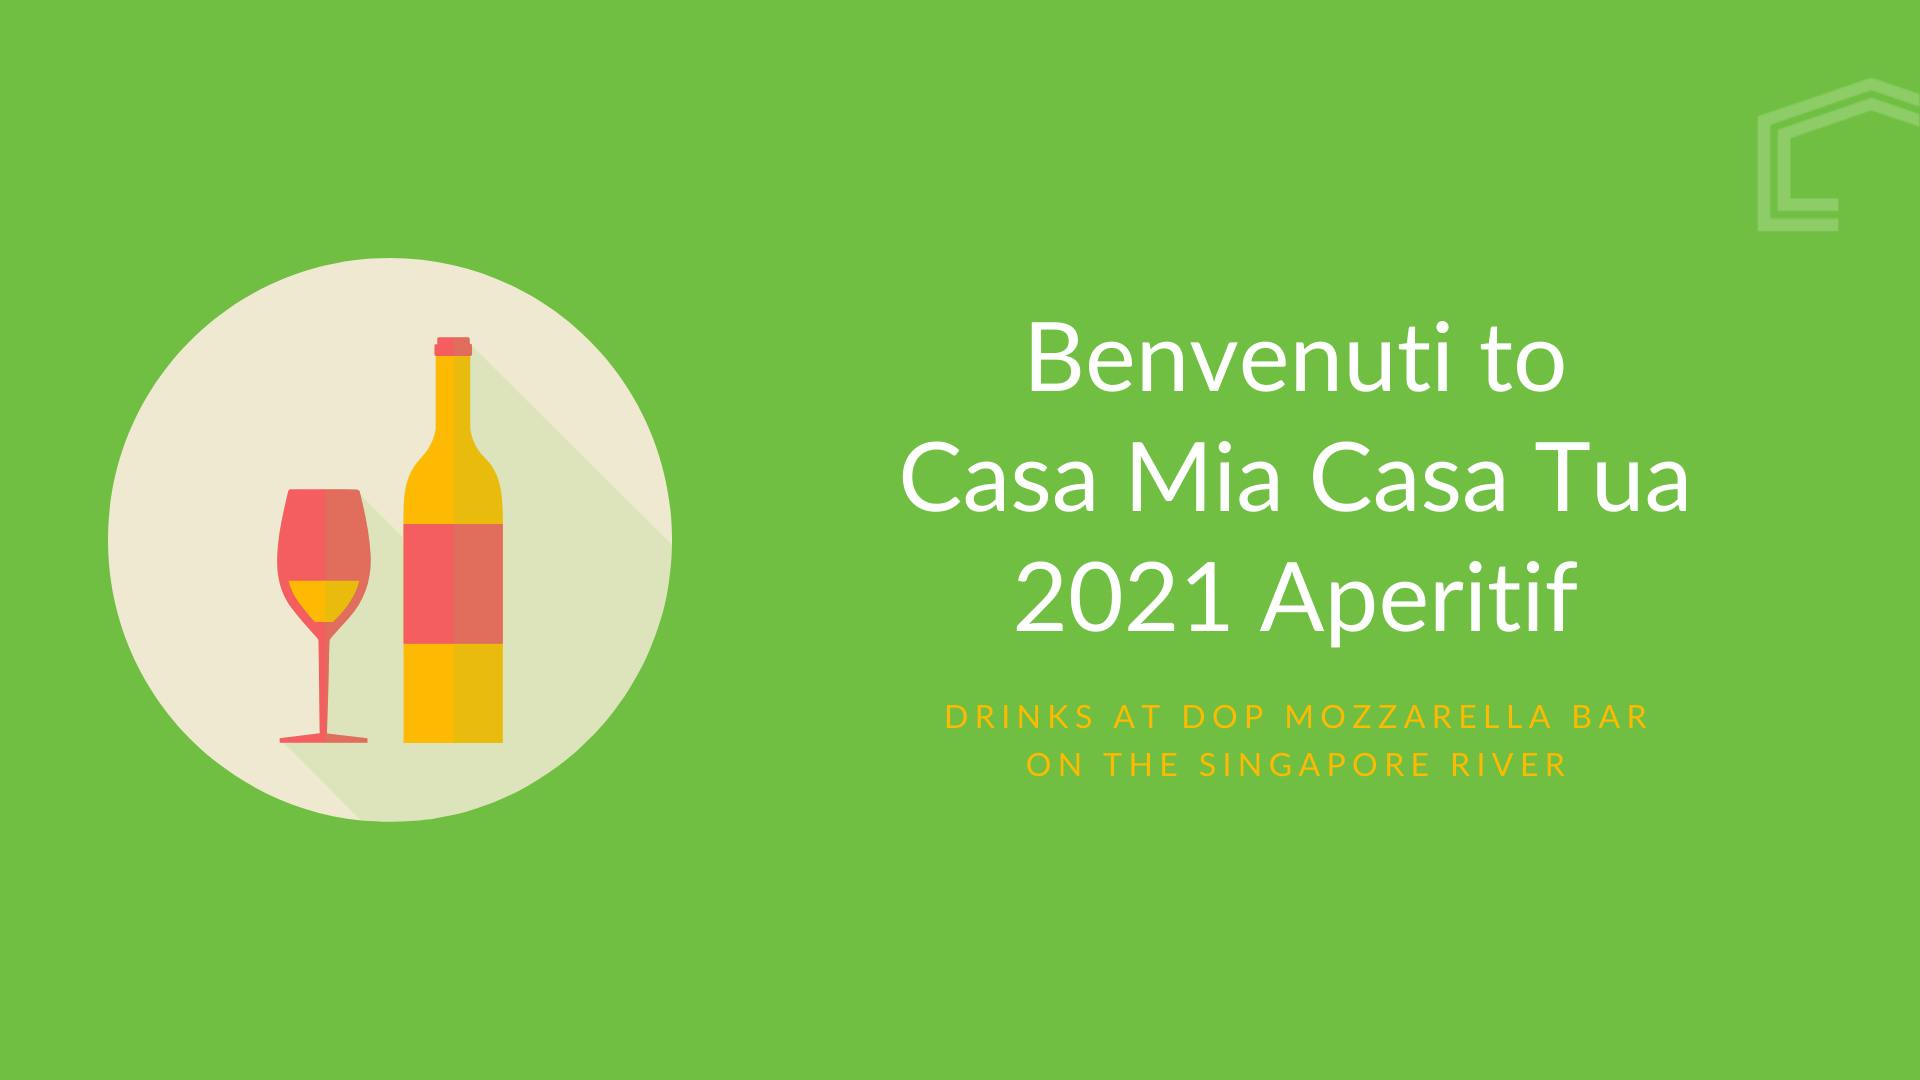 Benvenuti to Casa Mia Coliving 2021 Aperitif banner